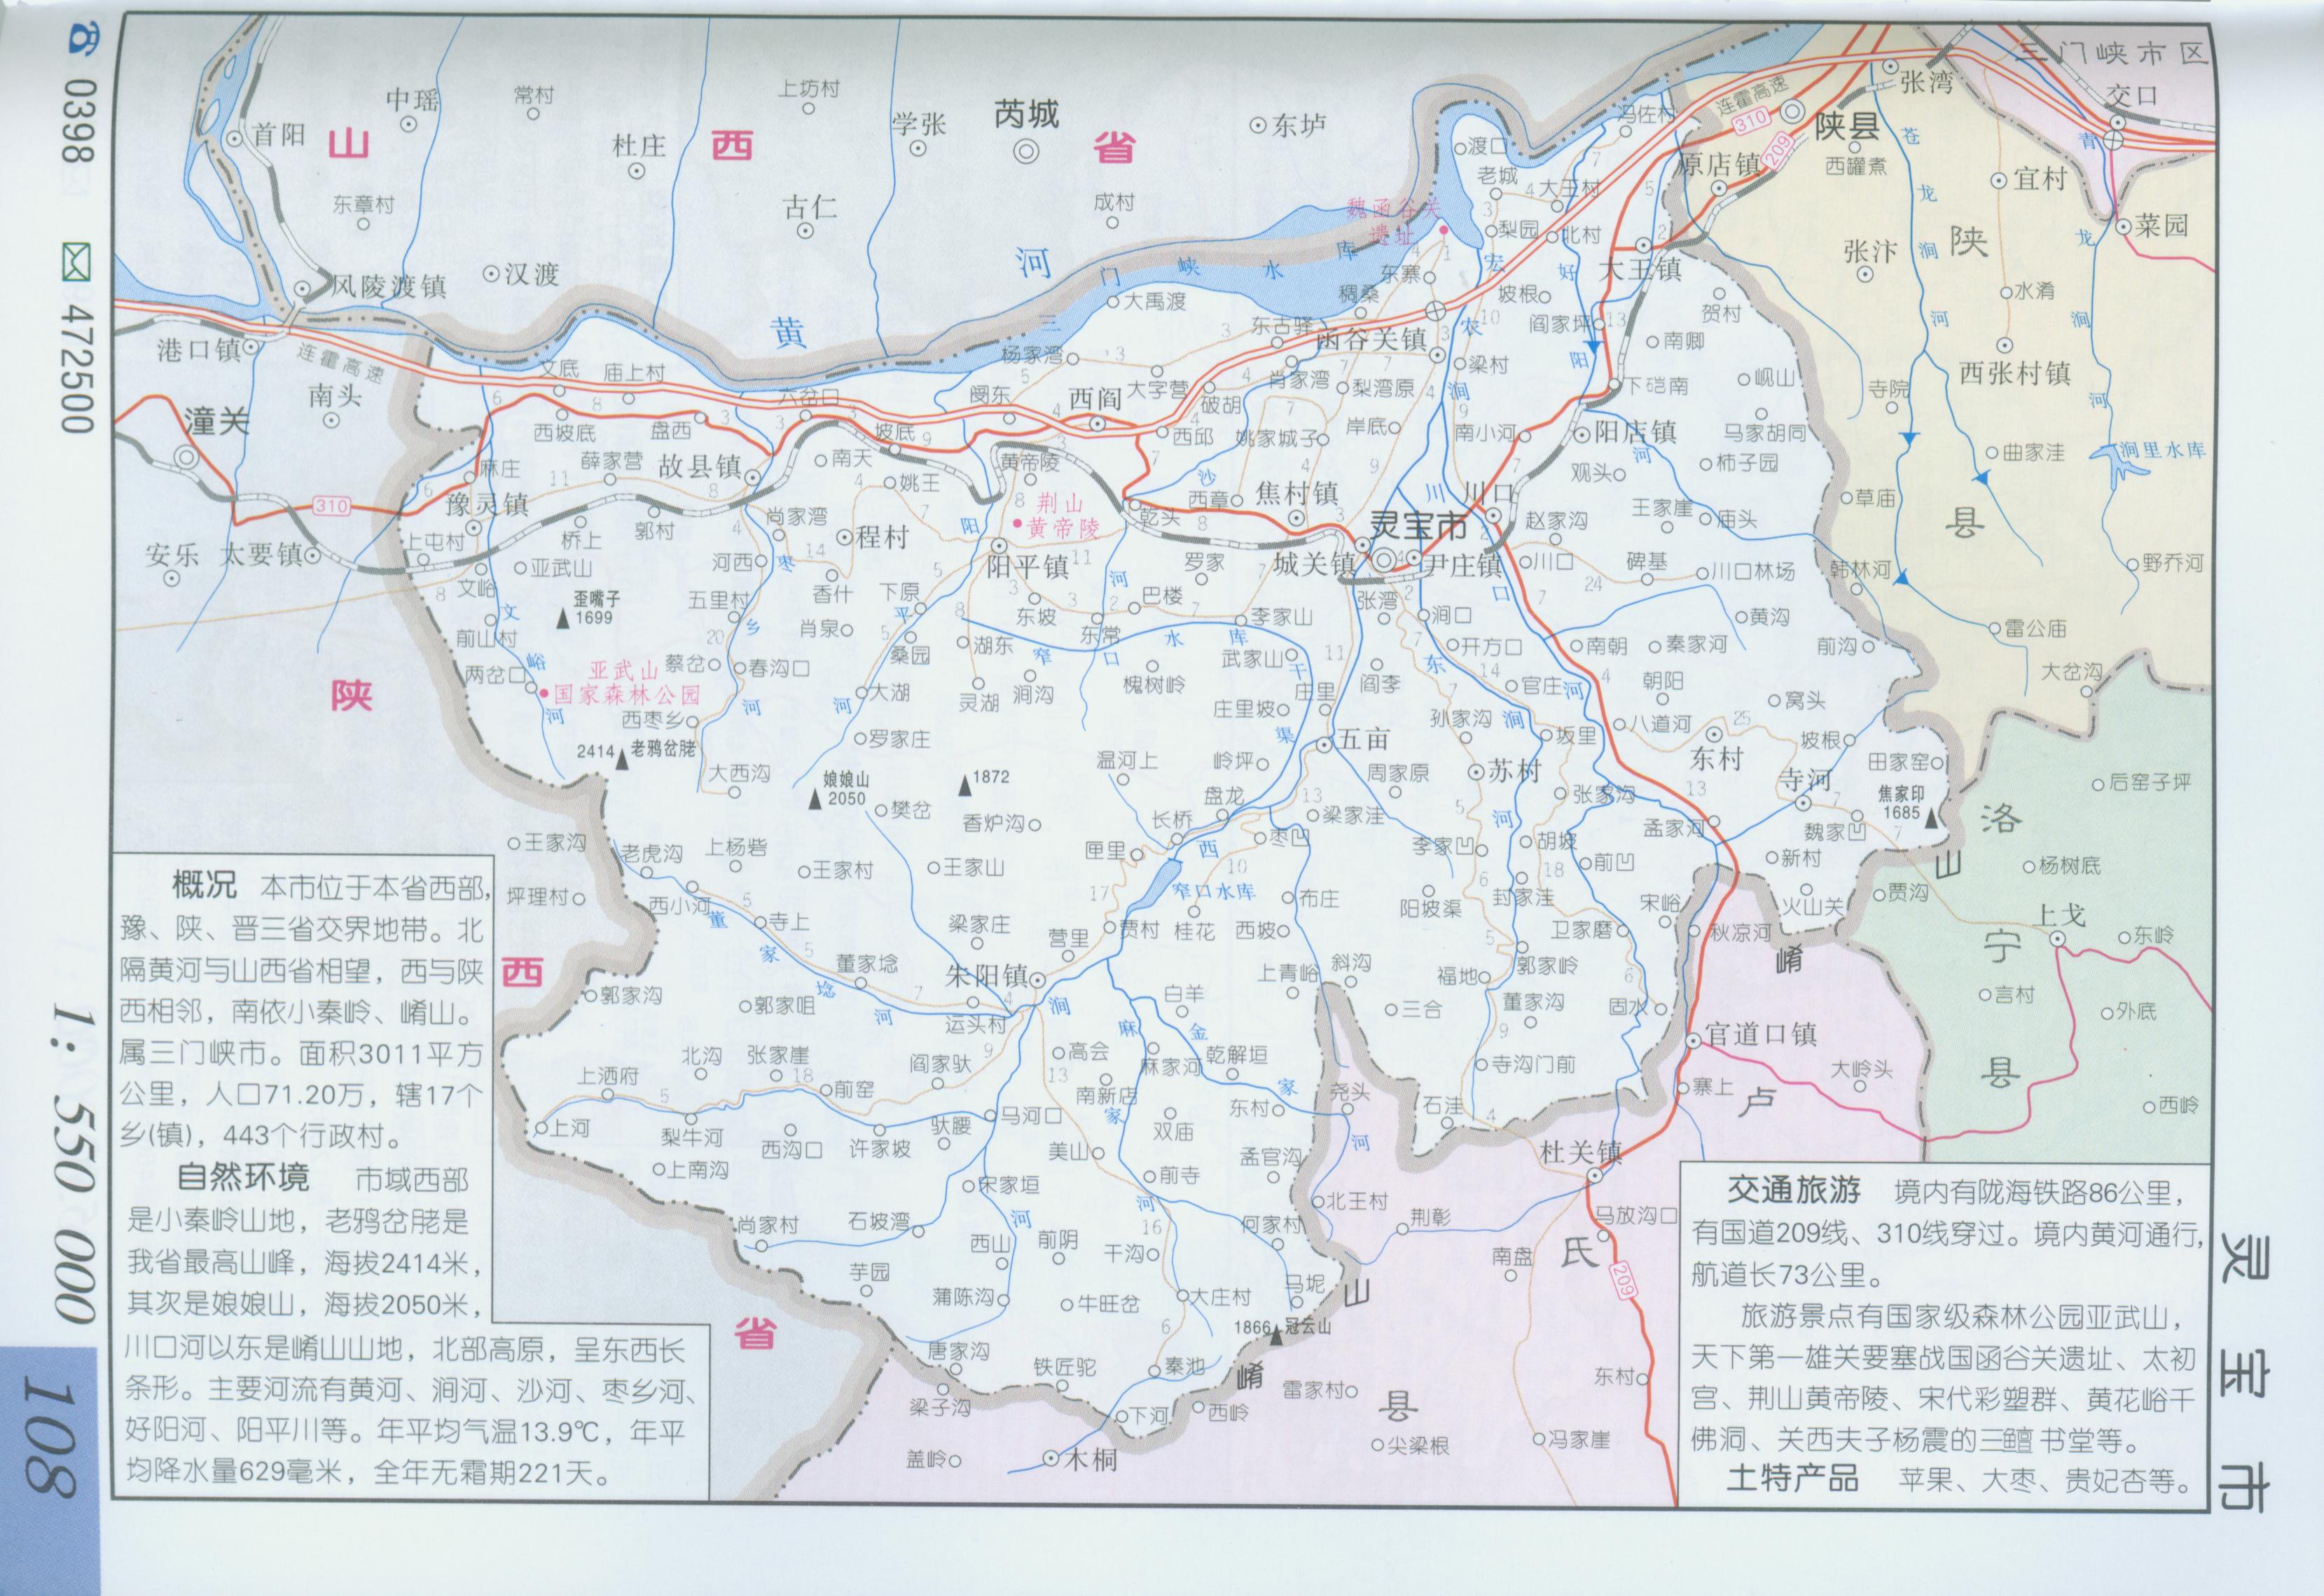 地图窝 中国 河南 三门峡  (长按地图可以放大,保存,分享)图片